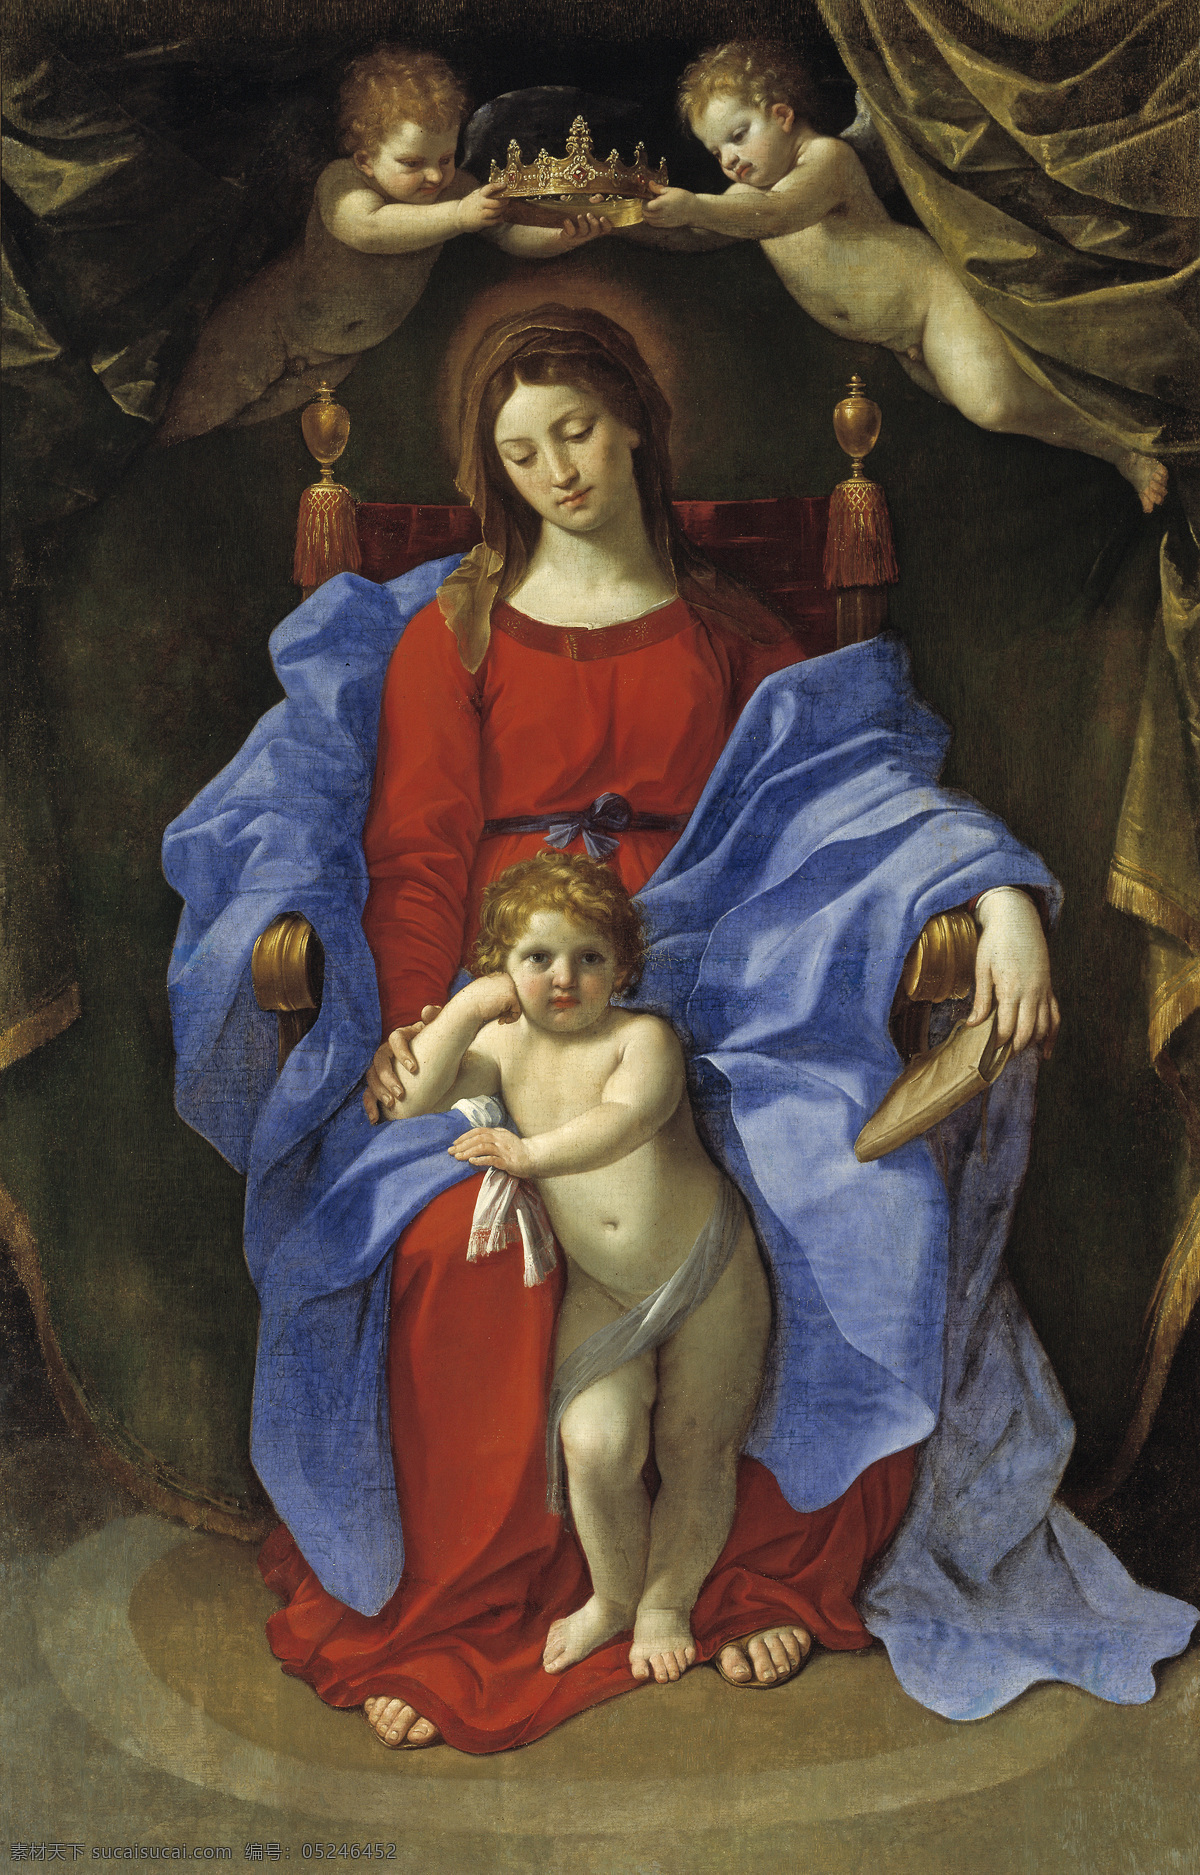 圣母与圣婴 宗教油画 圣母玛丽娅 圣婴 耶酥 古典油画 油画 绘画书法 文化艺术